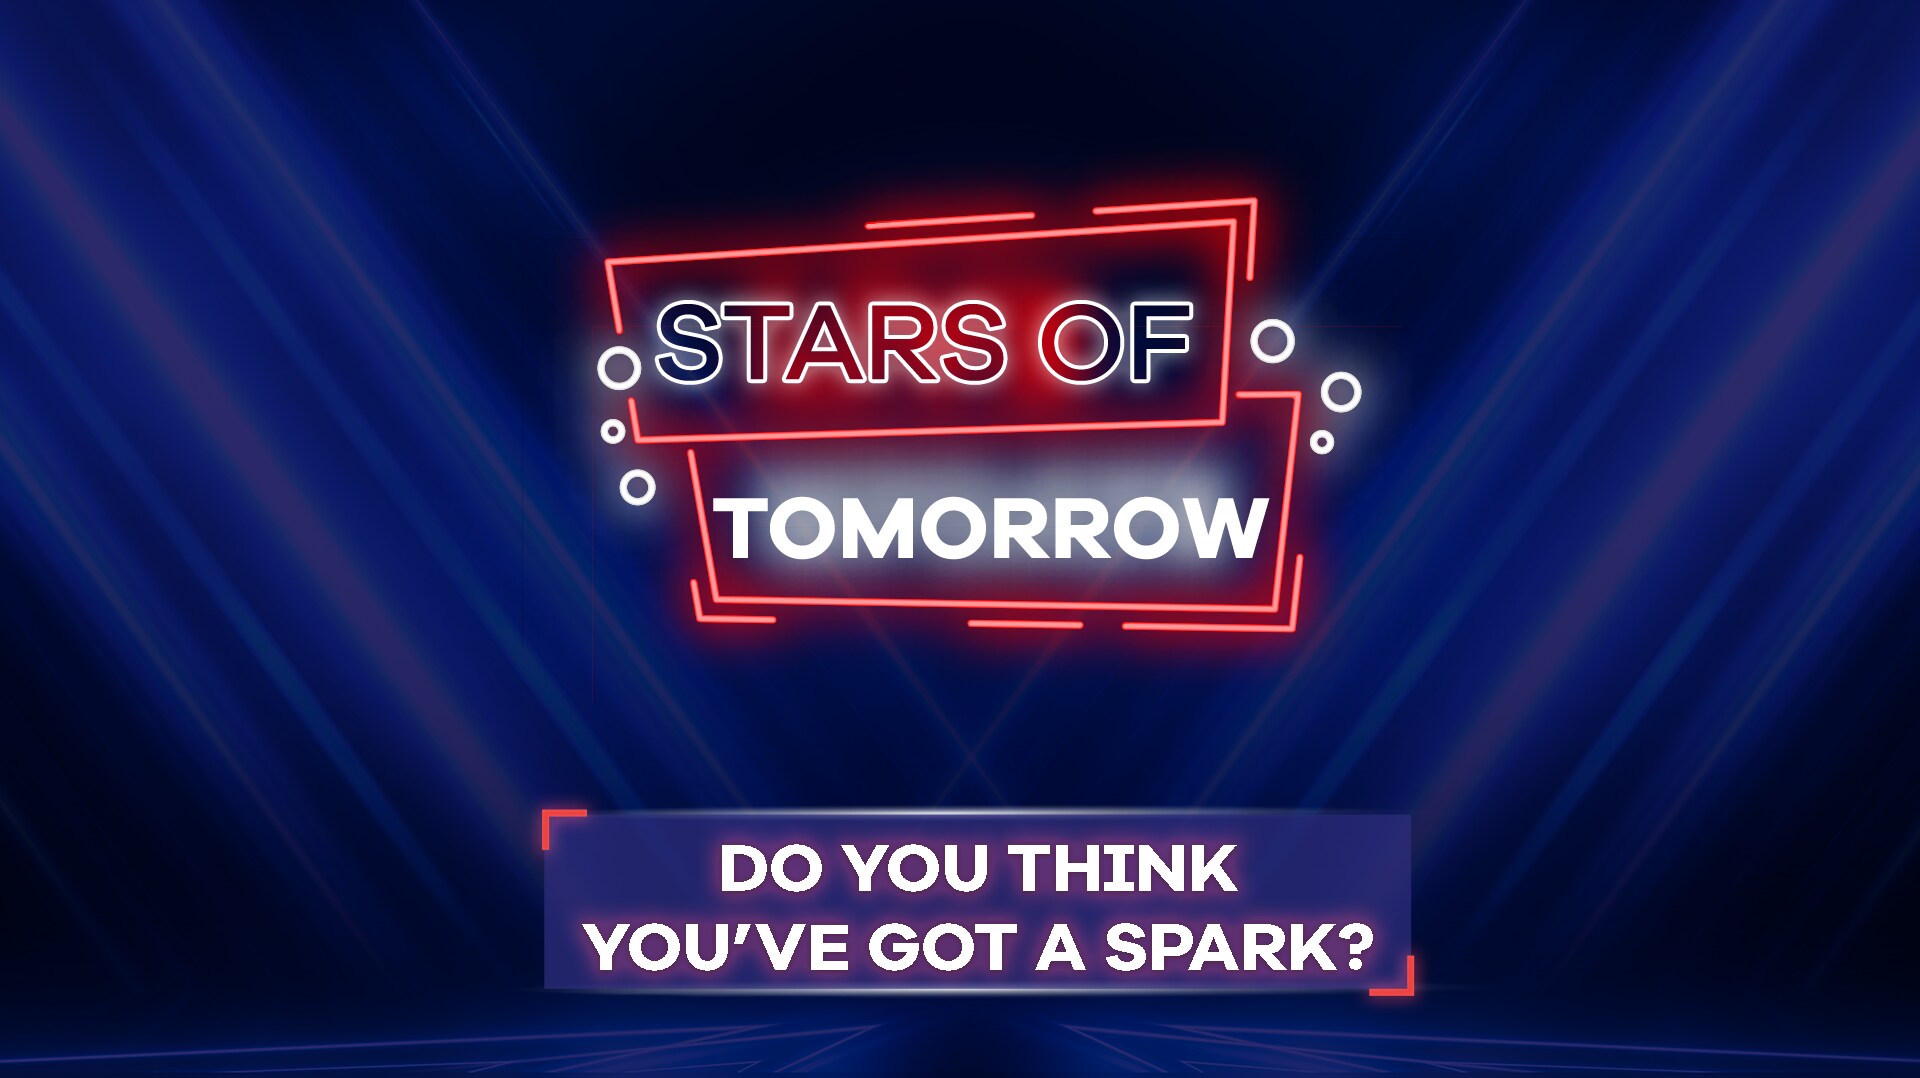 Do you think you’ve got a spark?